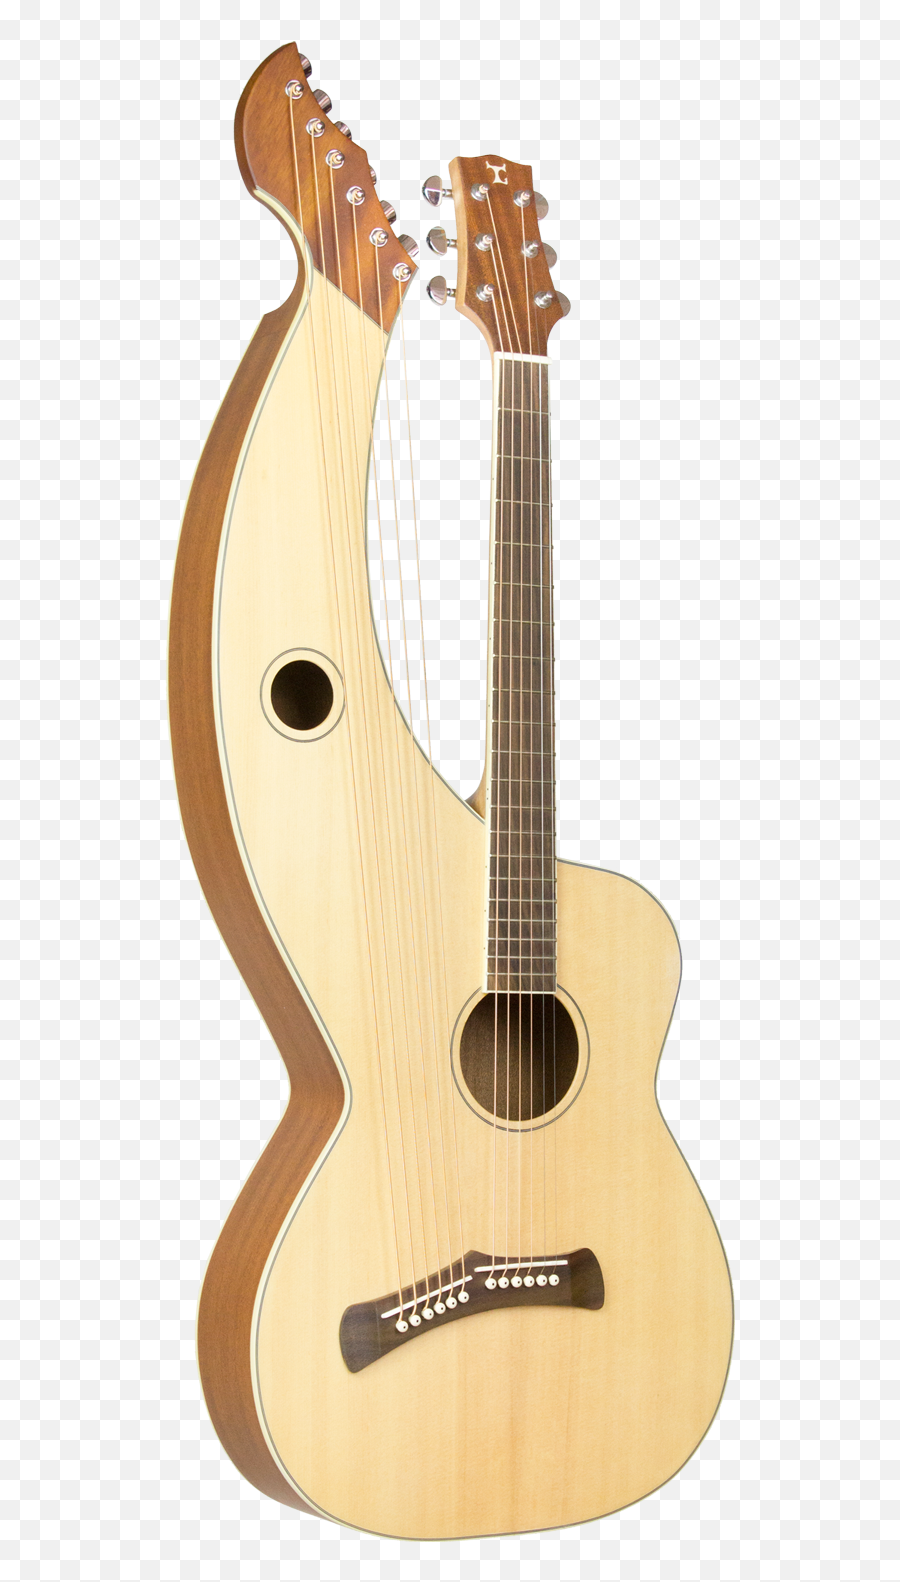 Harp Guitar For Sale Tonedevil Harp Guitars - Harp Guitar Emoji,Guitar Transparent